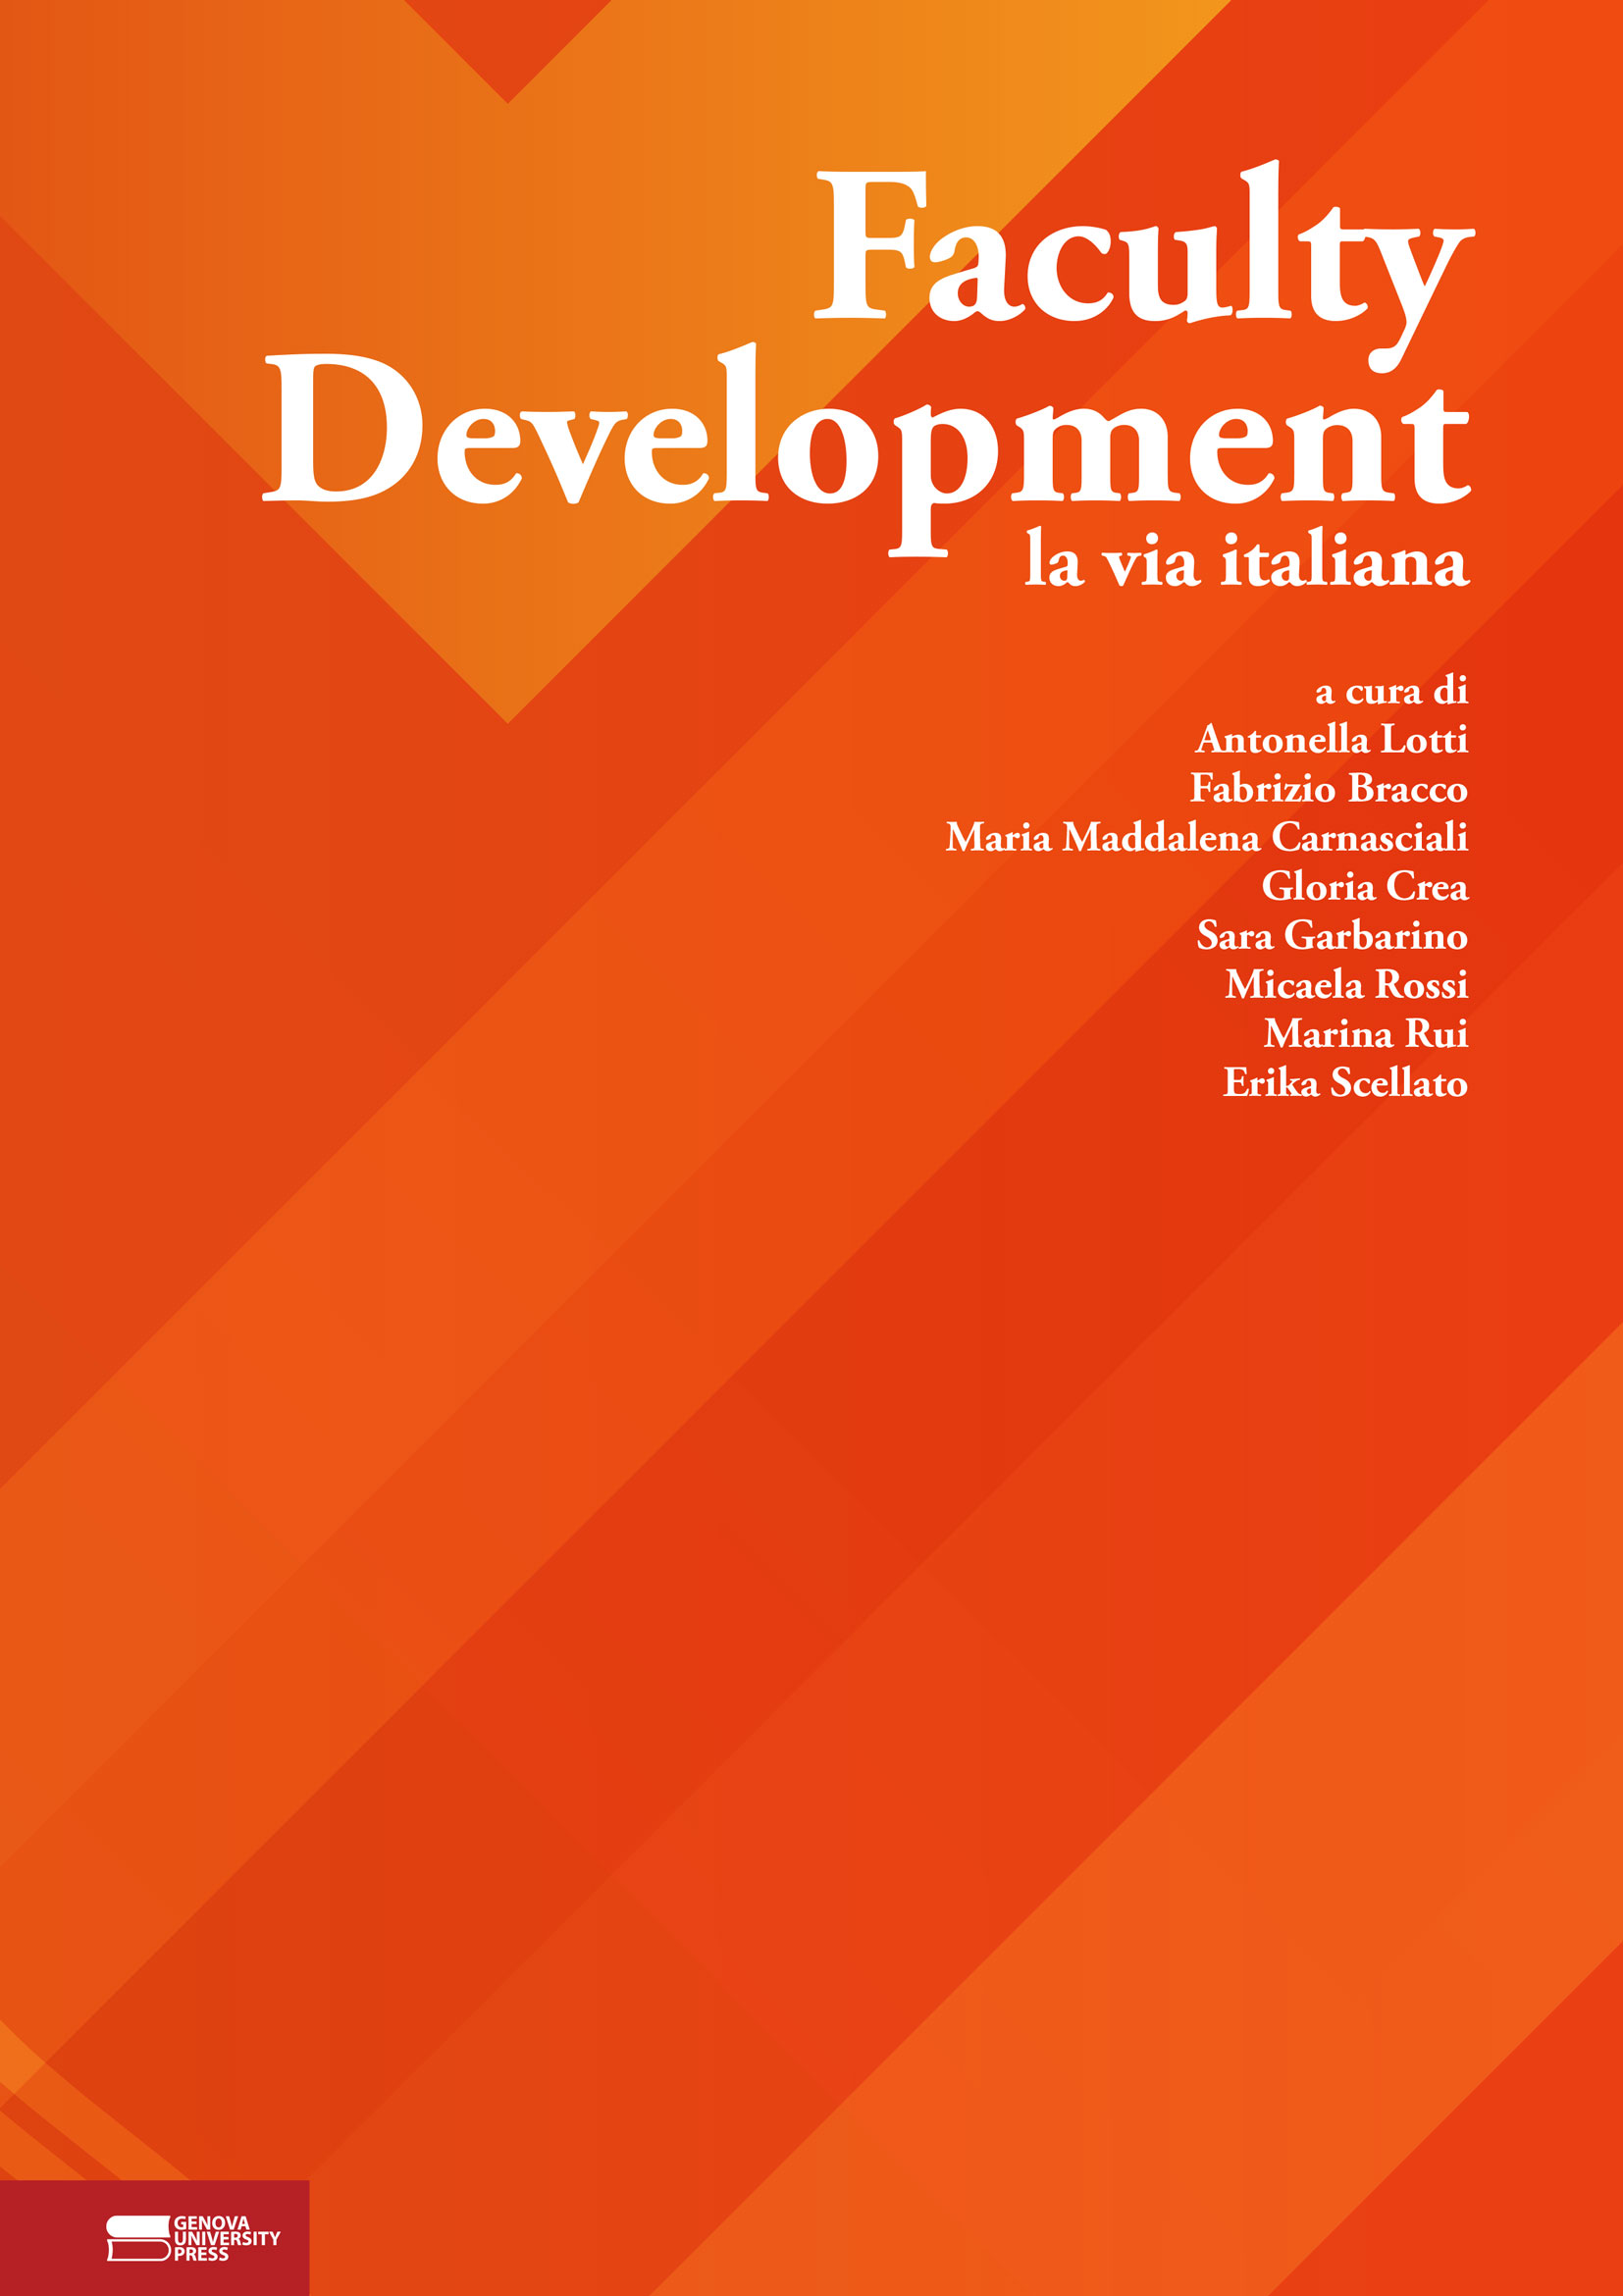 Faculty Development: la via italiana